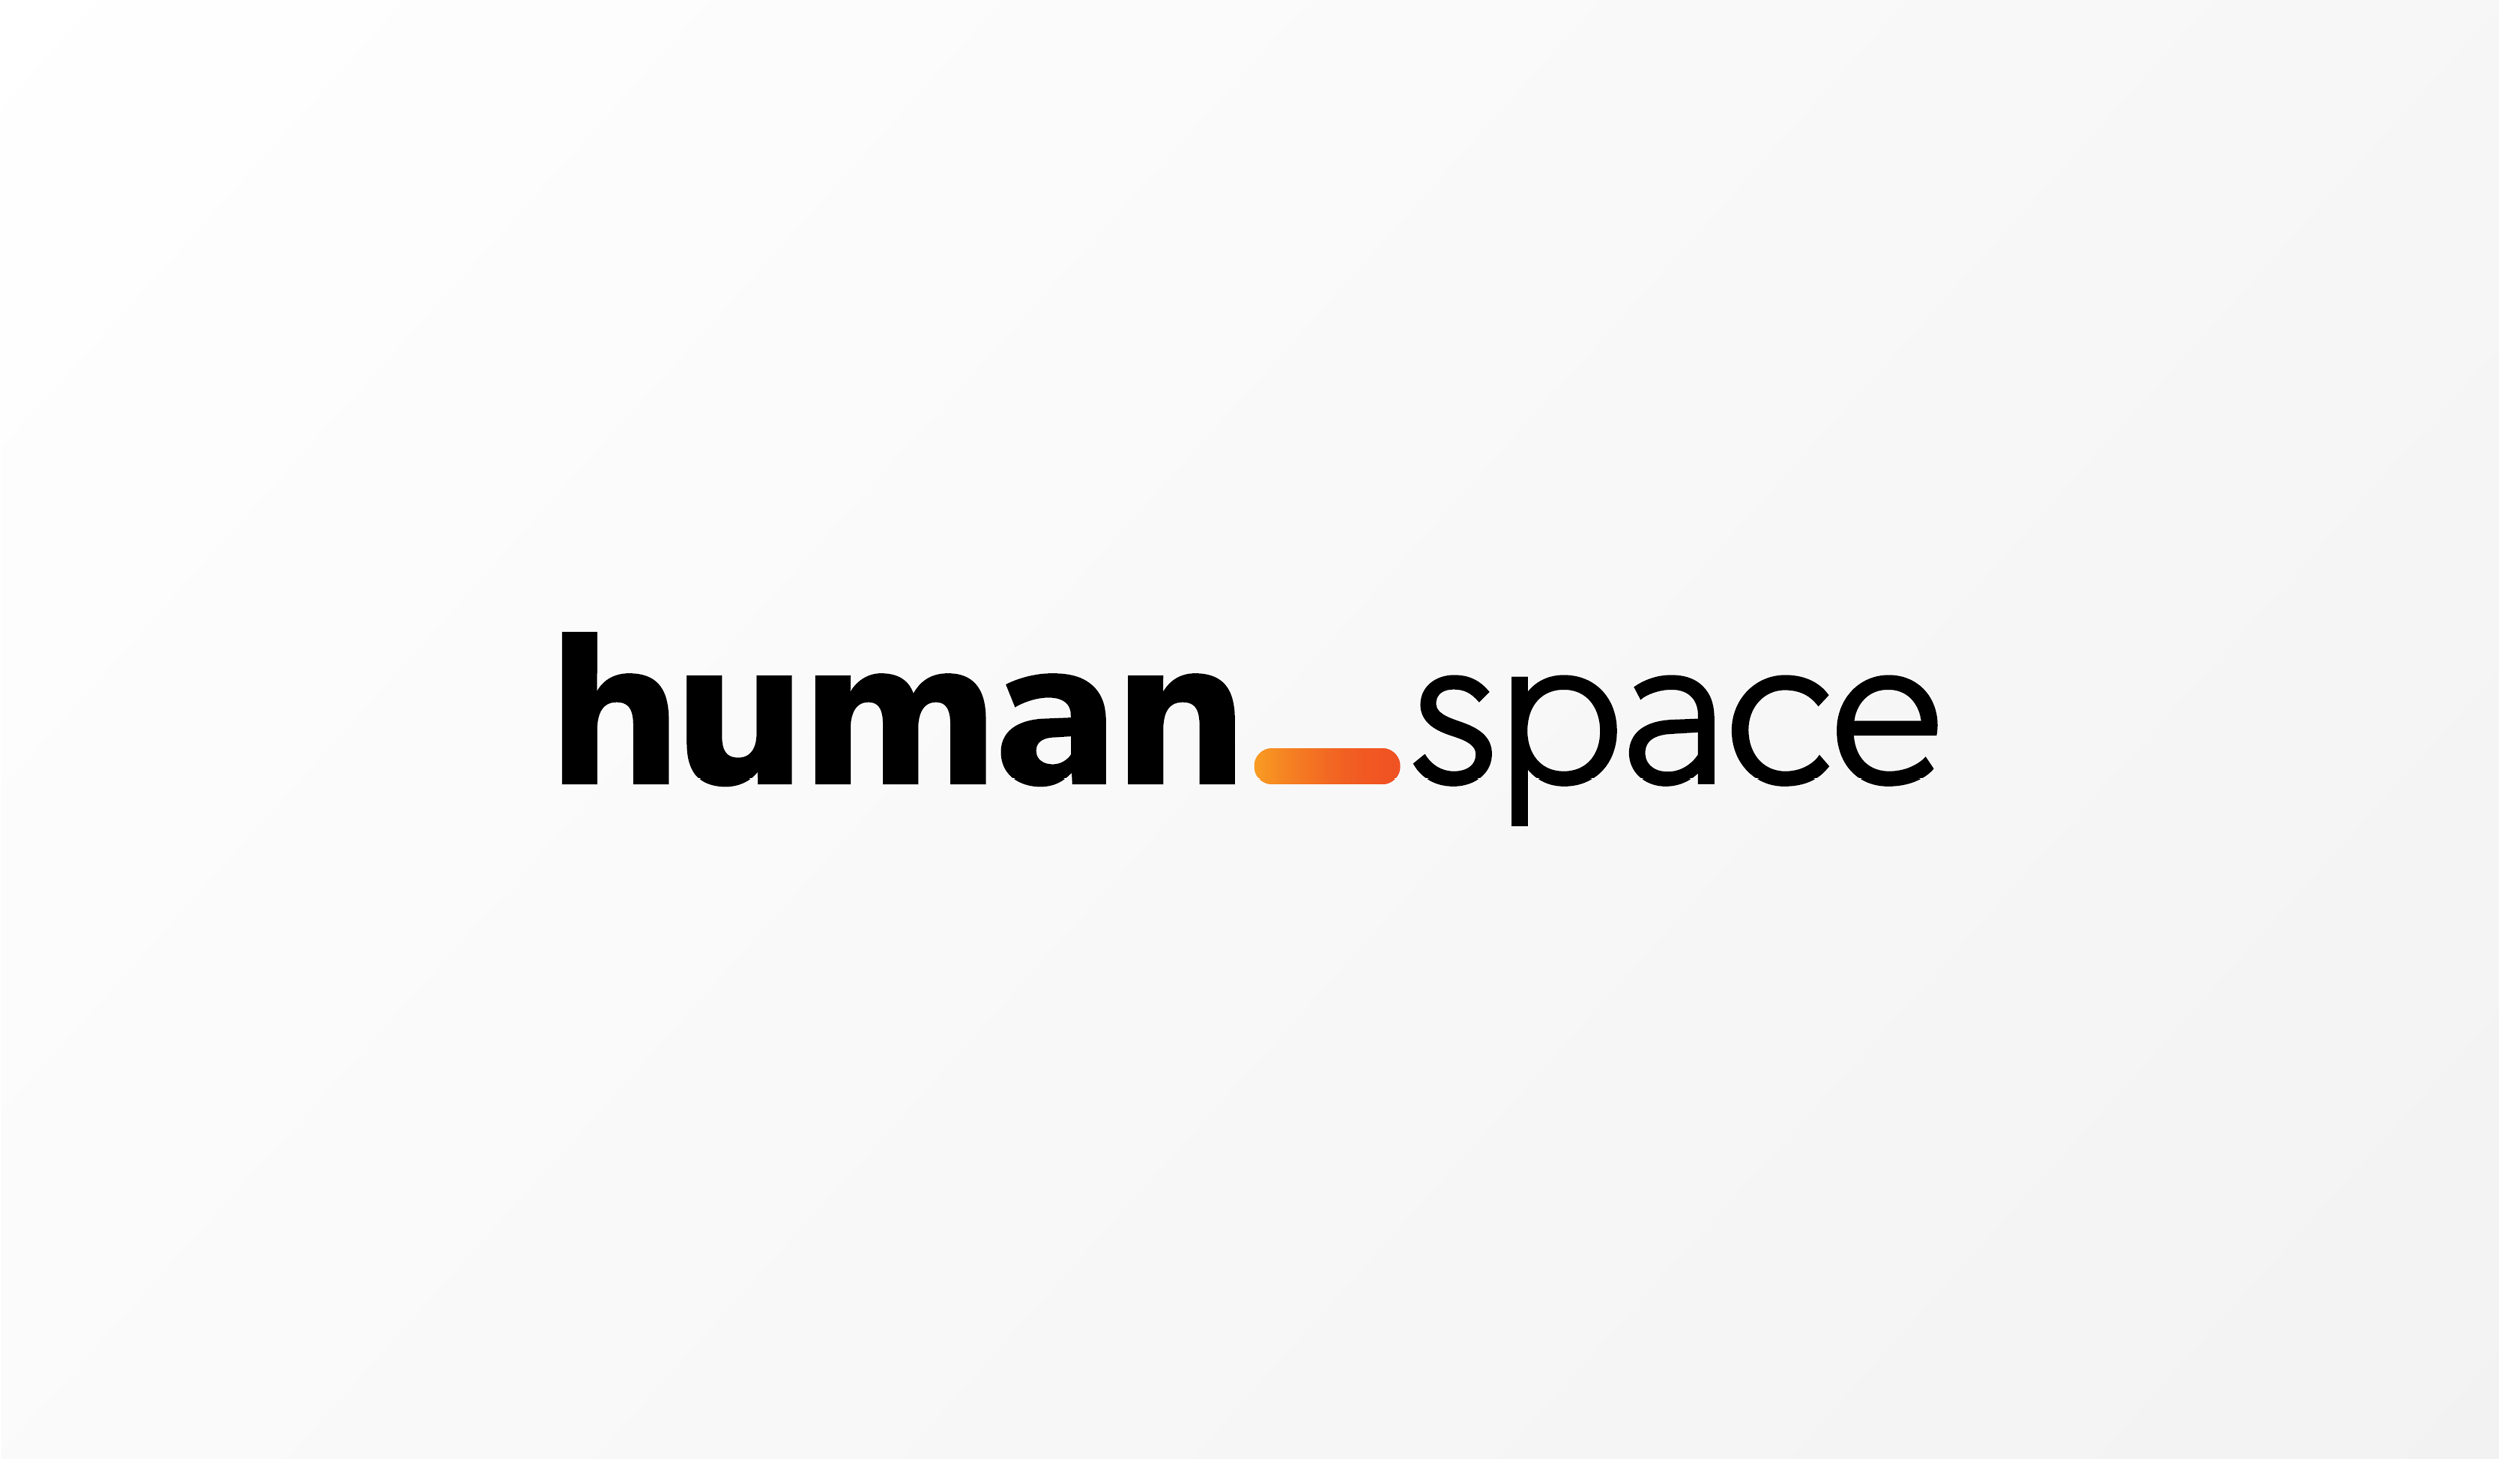 Making (Human) Space